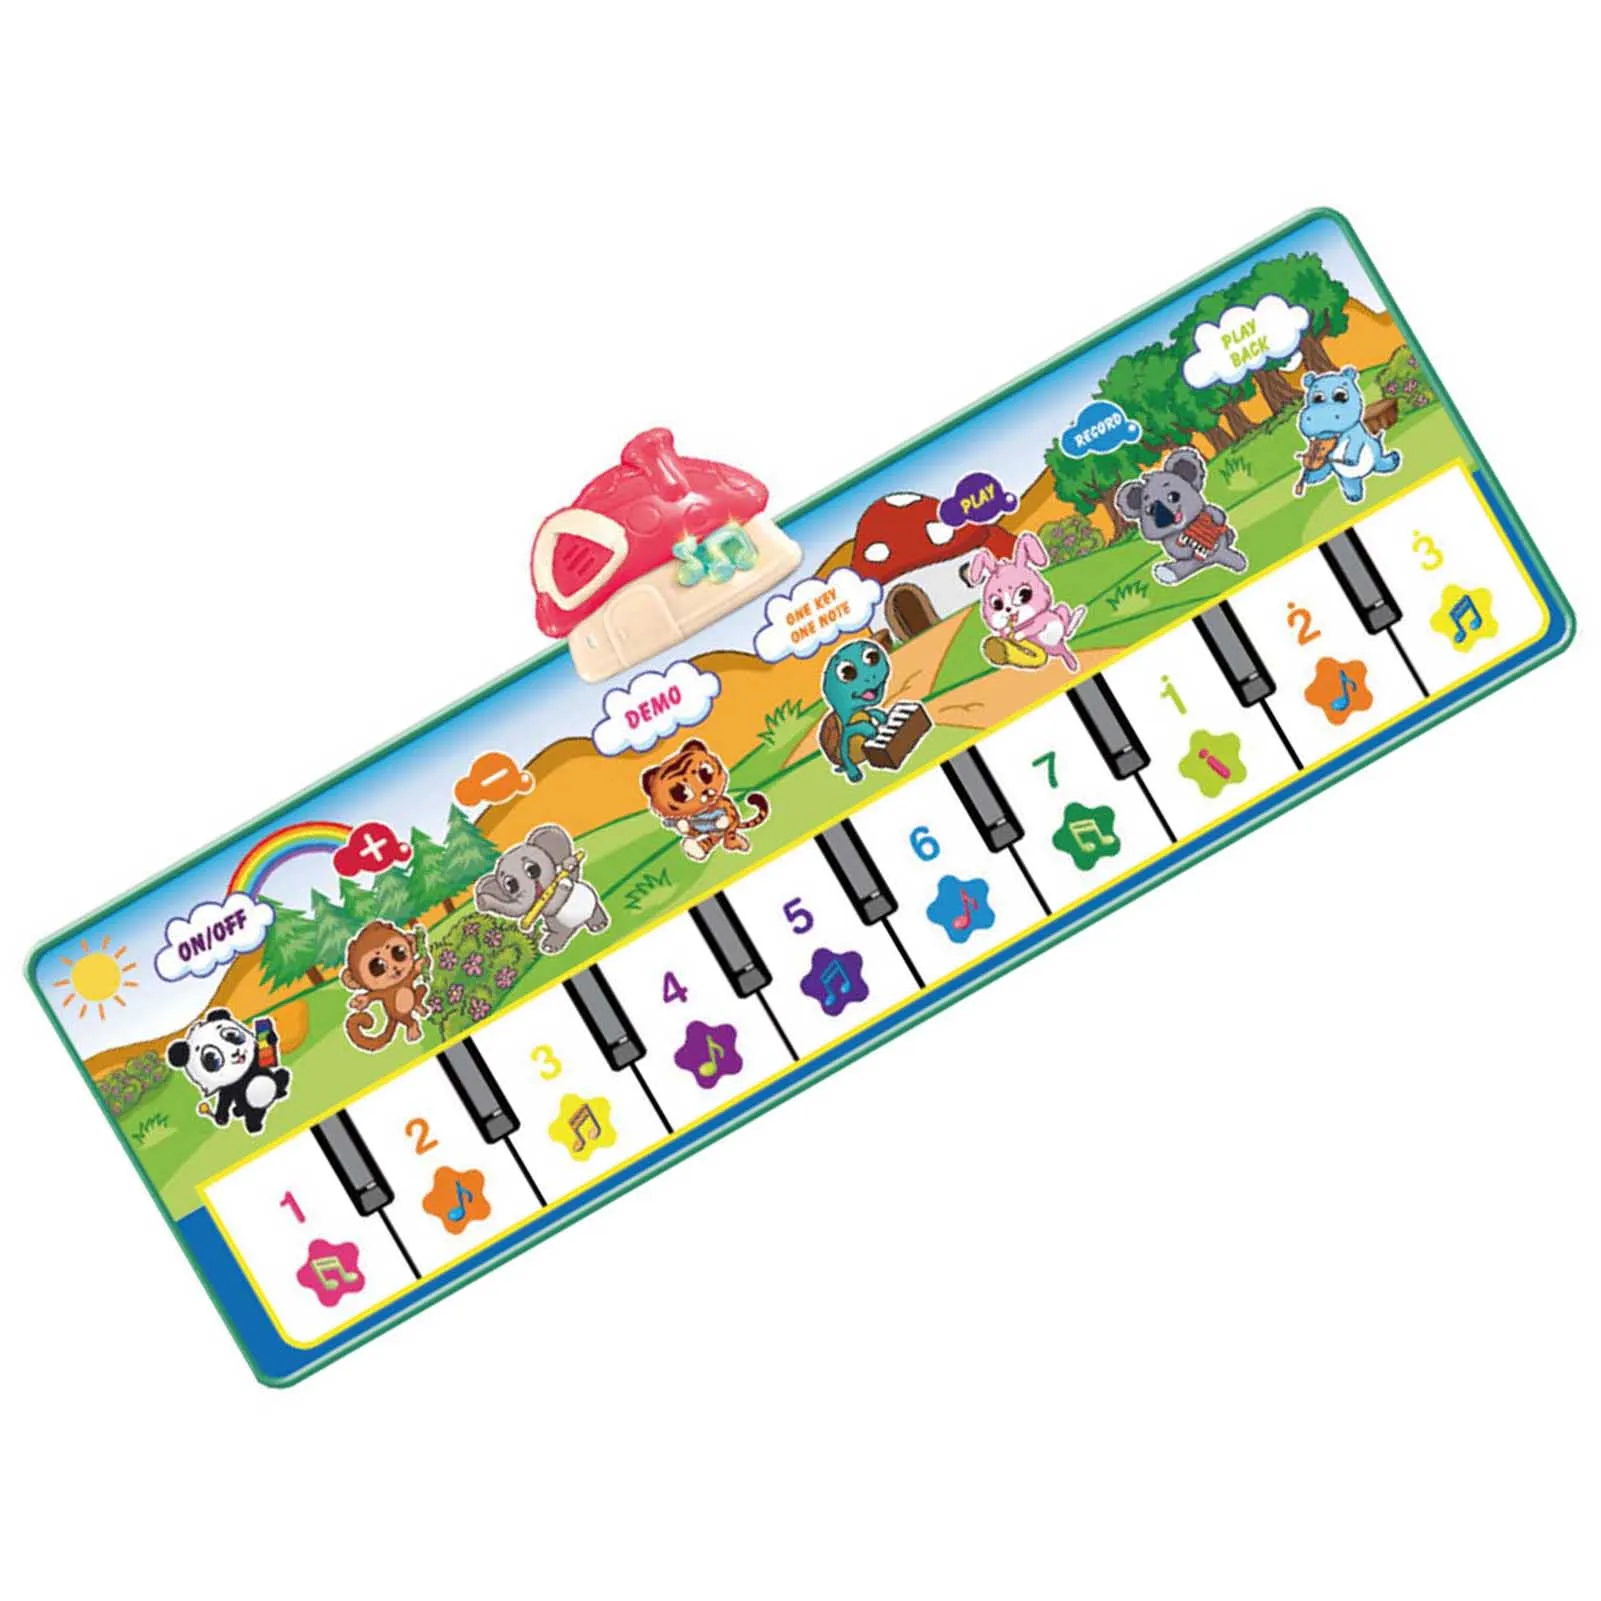 

Детский музыкальный игровой коврик с клавиатурой пианино, забавная электронная клавиатура пианино, музыкальный танцевальный коврик для малышей, подарки на Рождество и день рождения